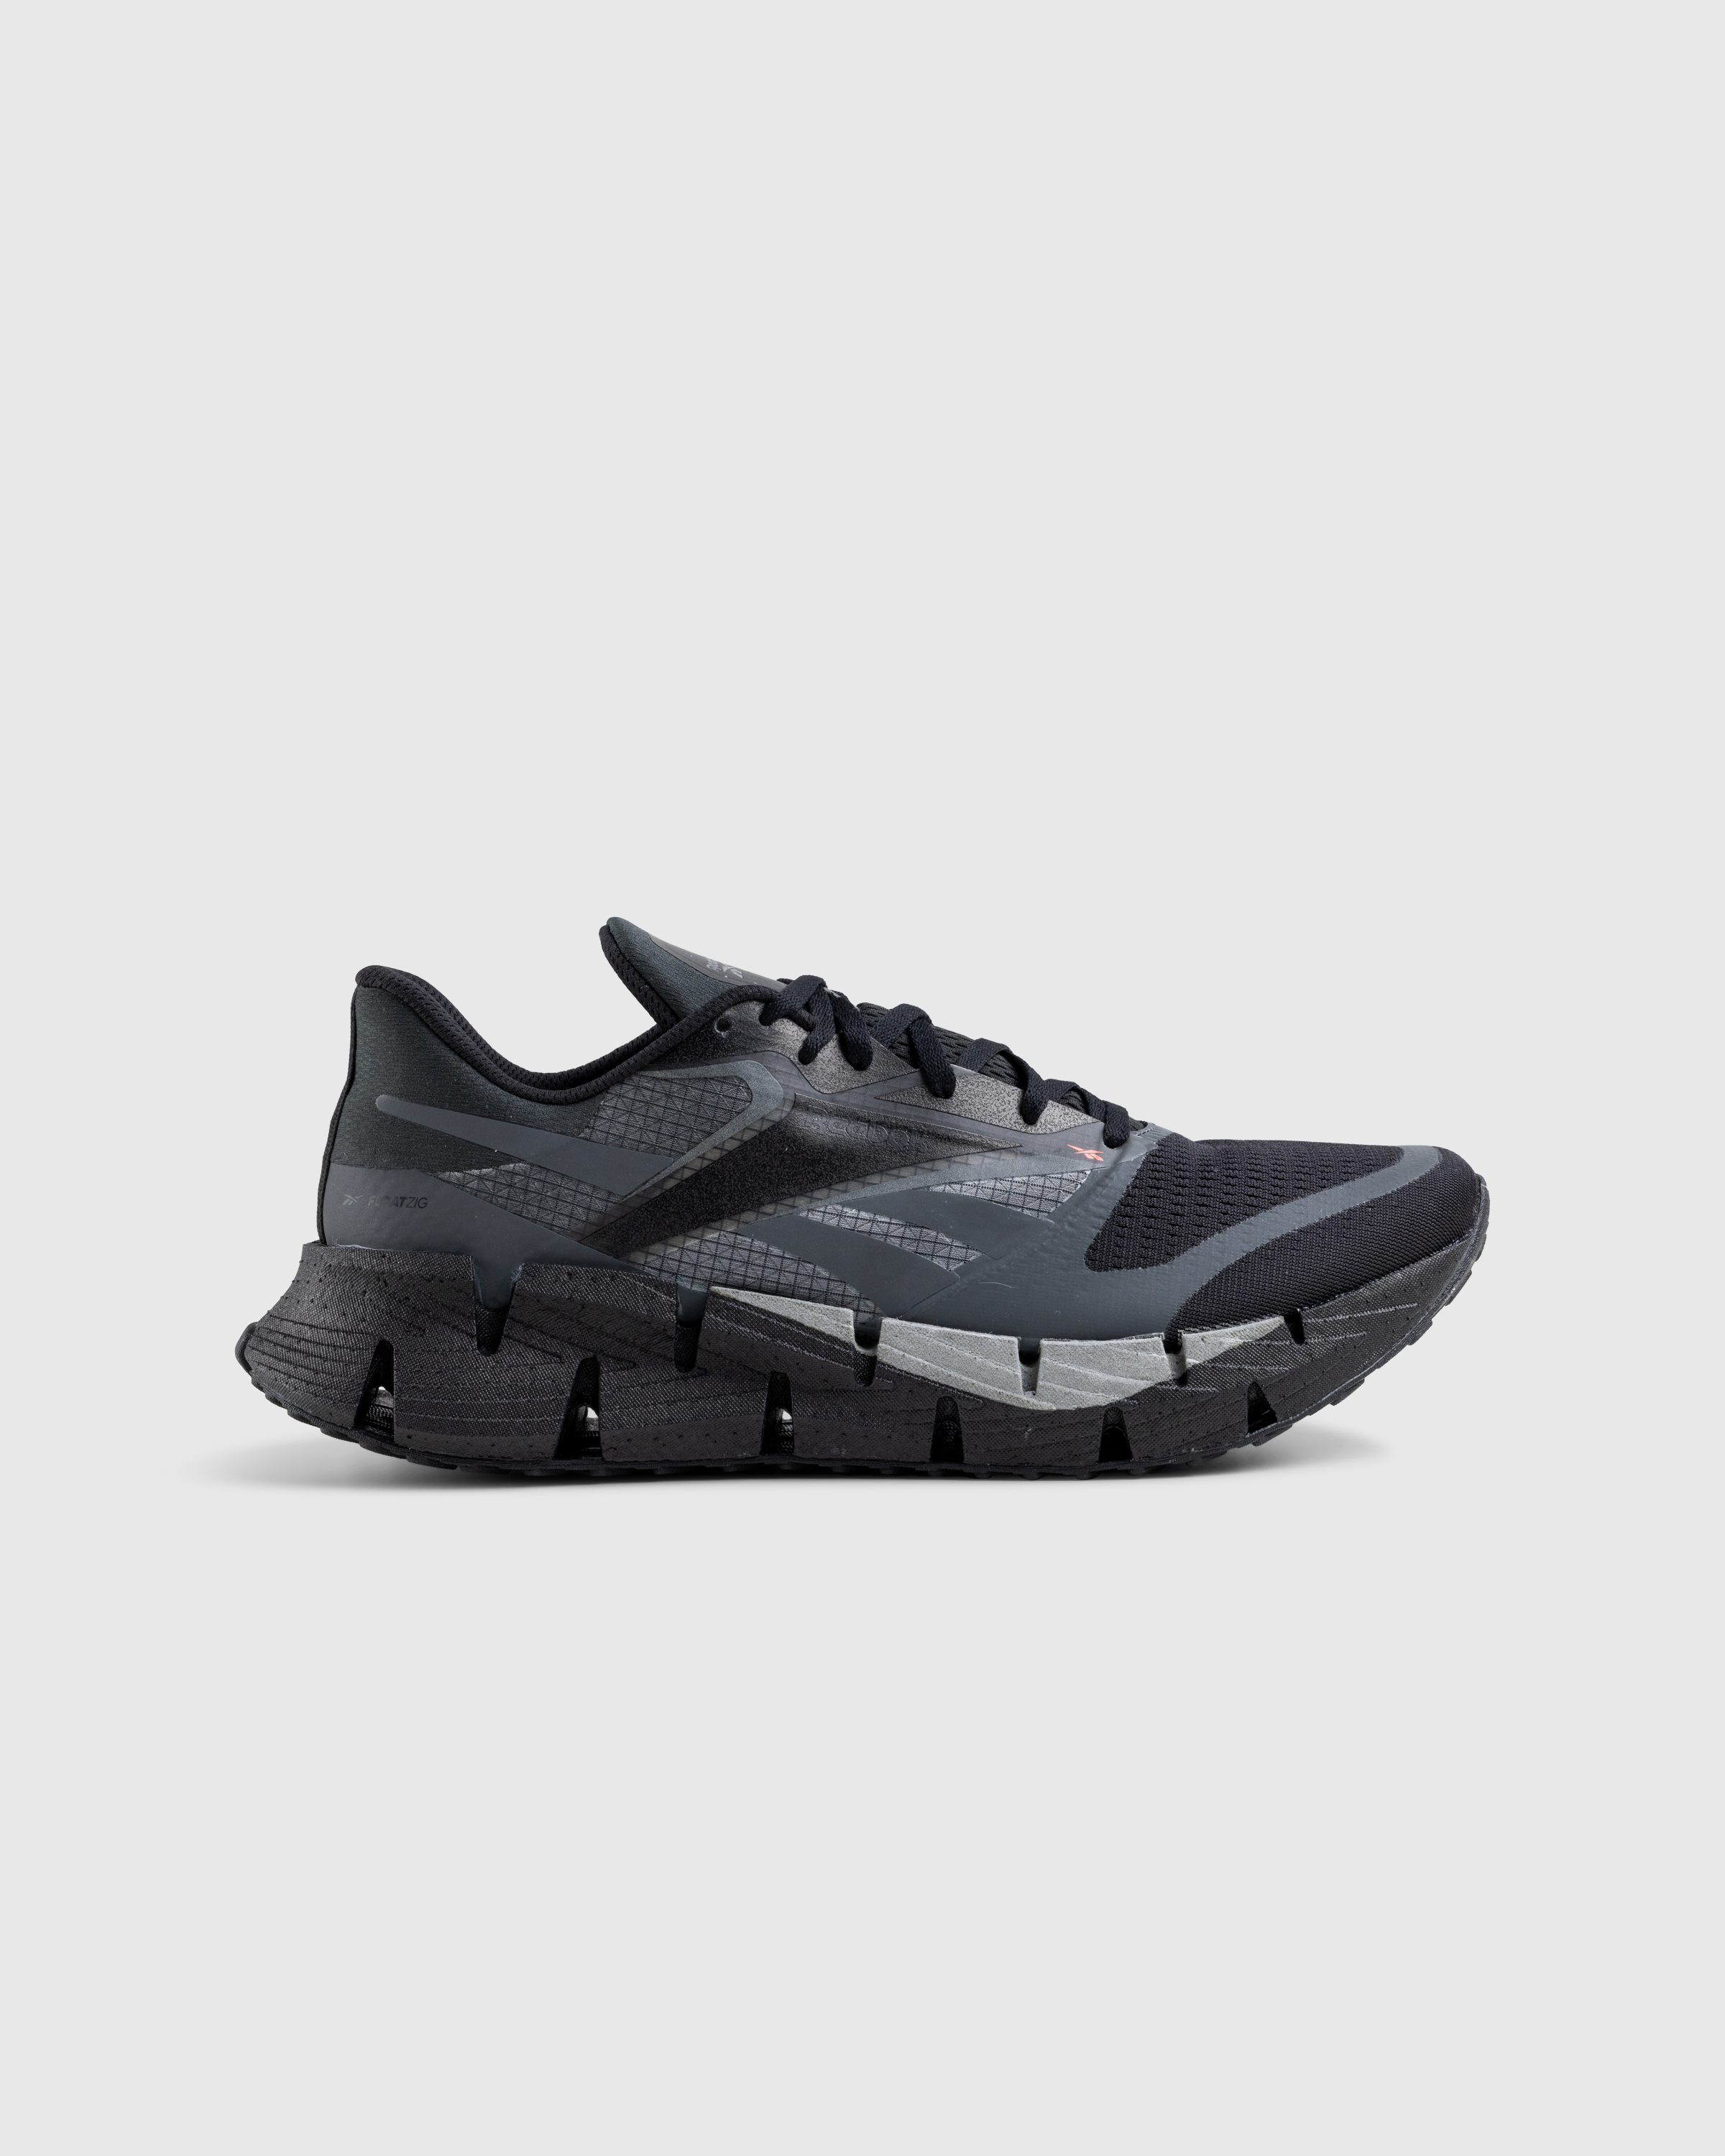 Reebok – FloatZig Black - Low Top Sneakers - Black - Image 1